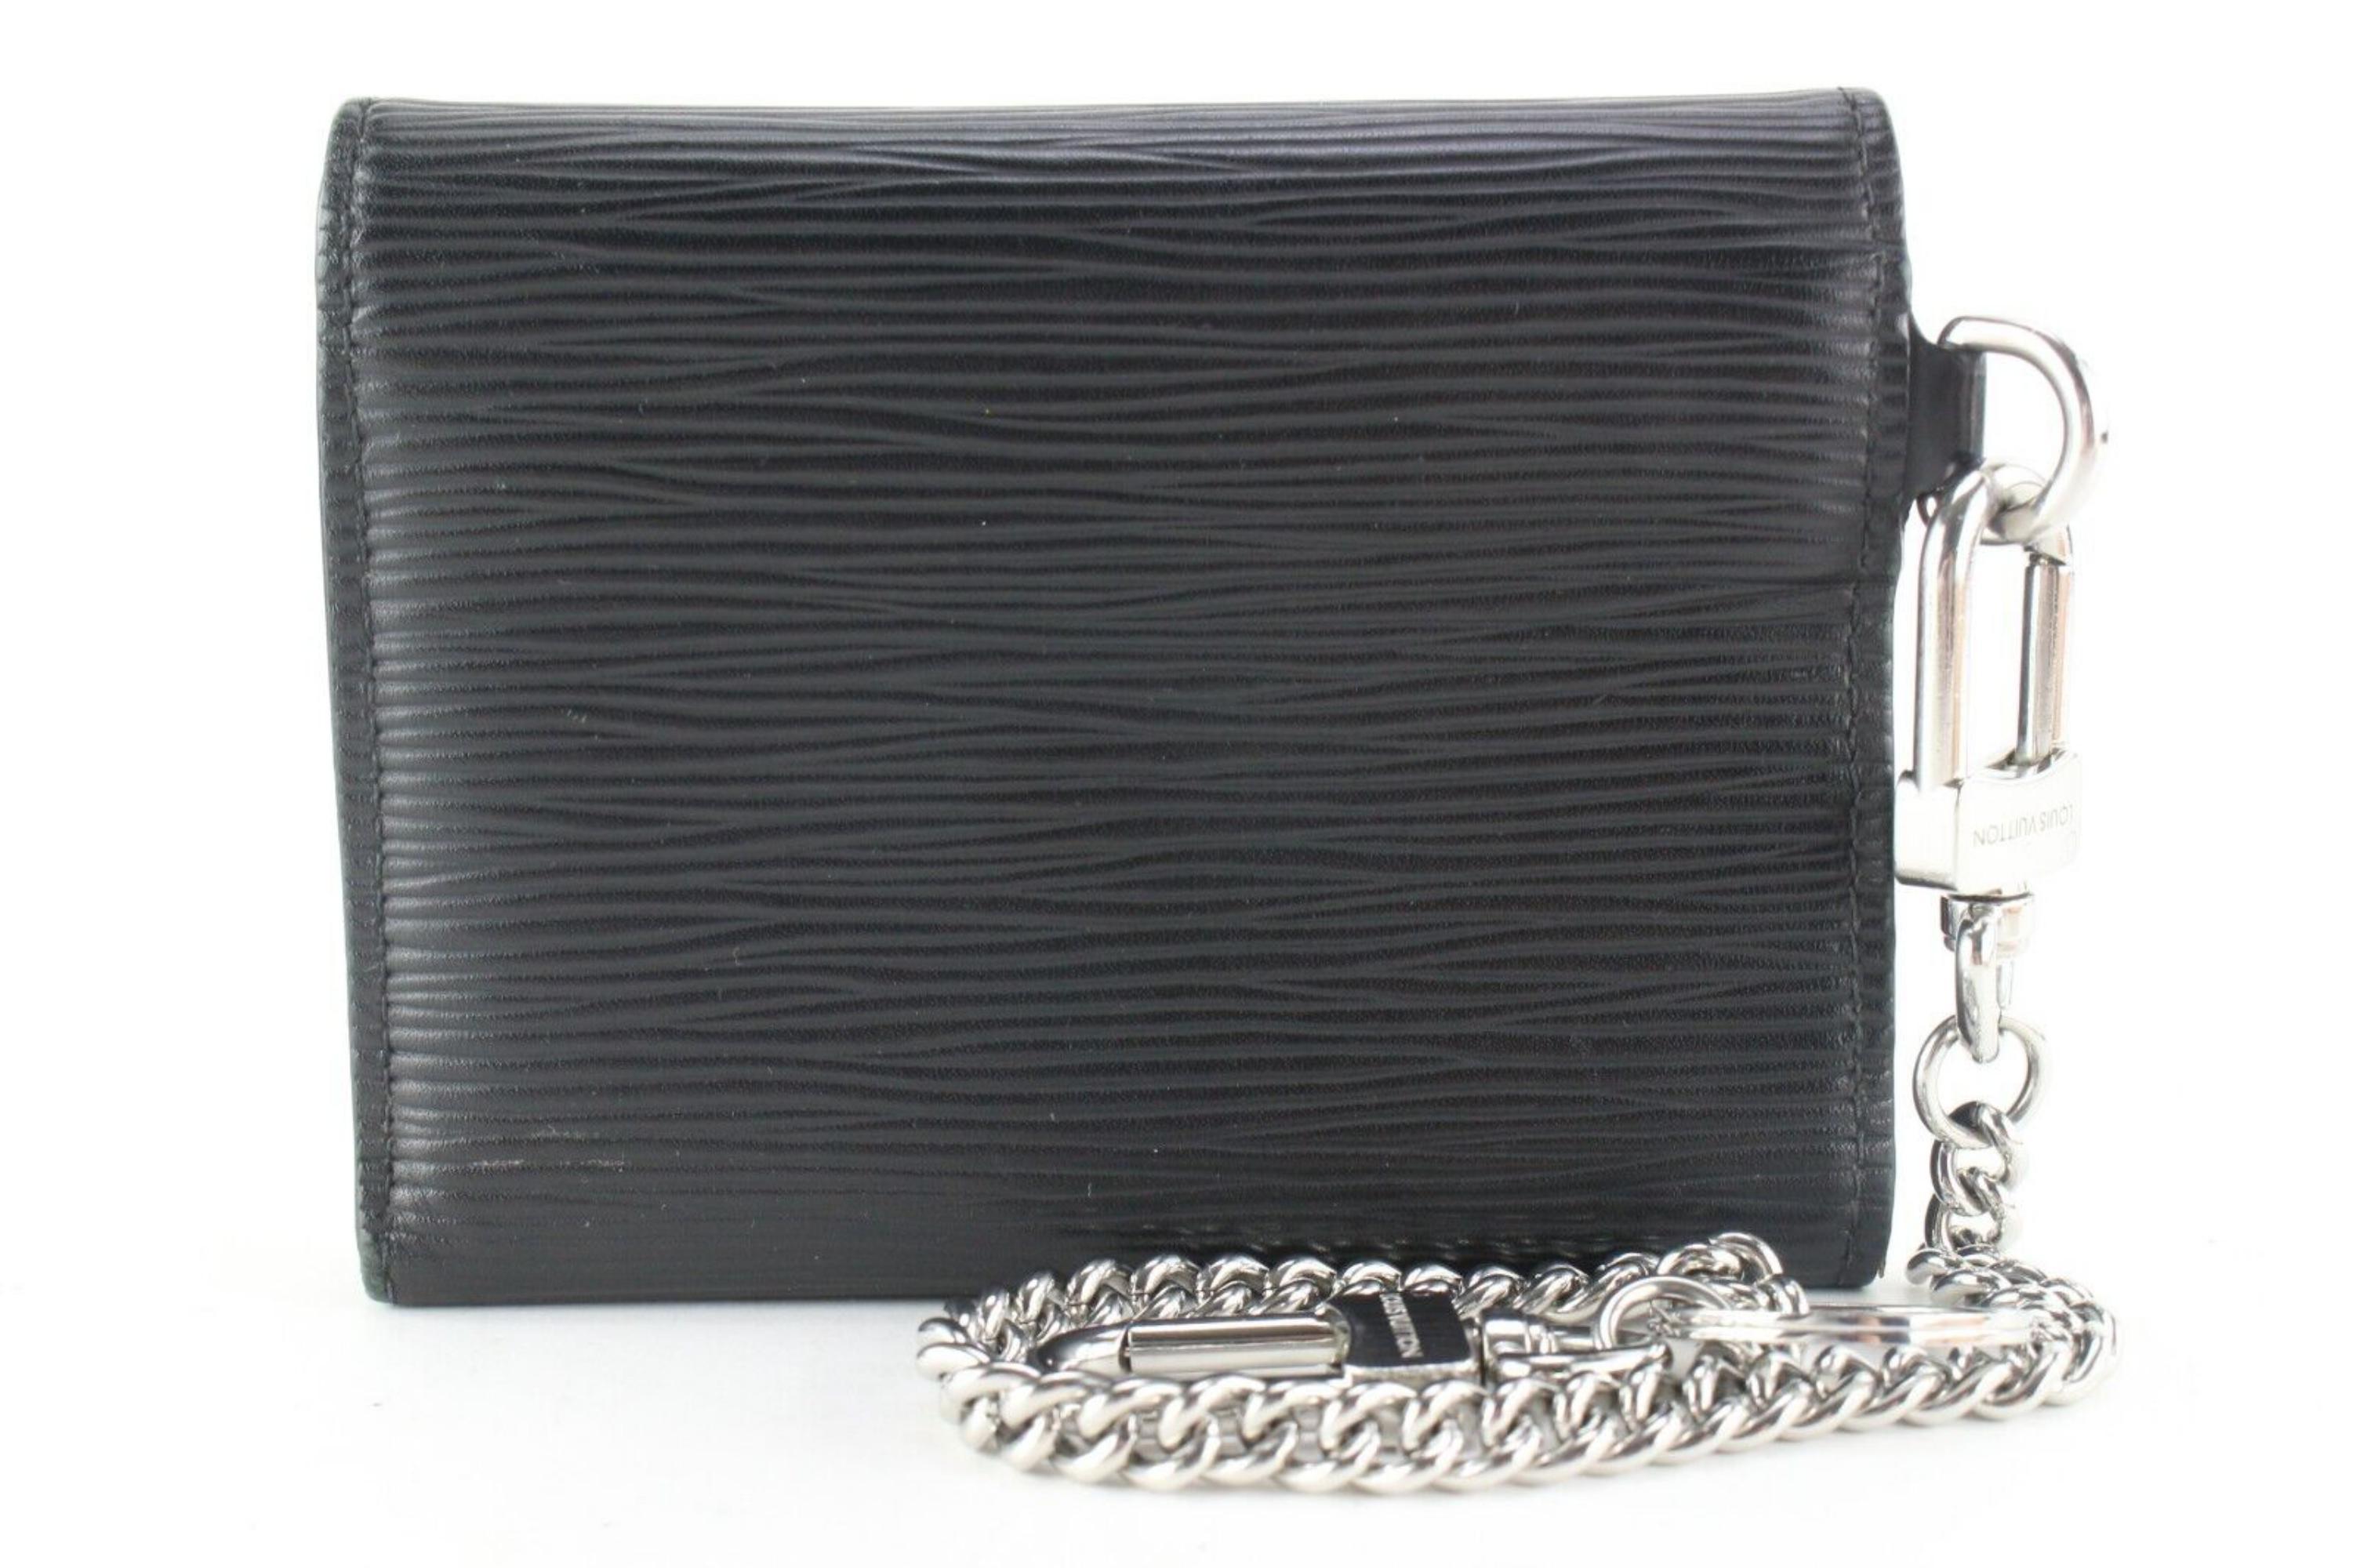 Louis Vuitton Black Epi Leather Rivets Chain Wallet Compact 4LK0216 7